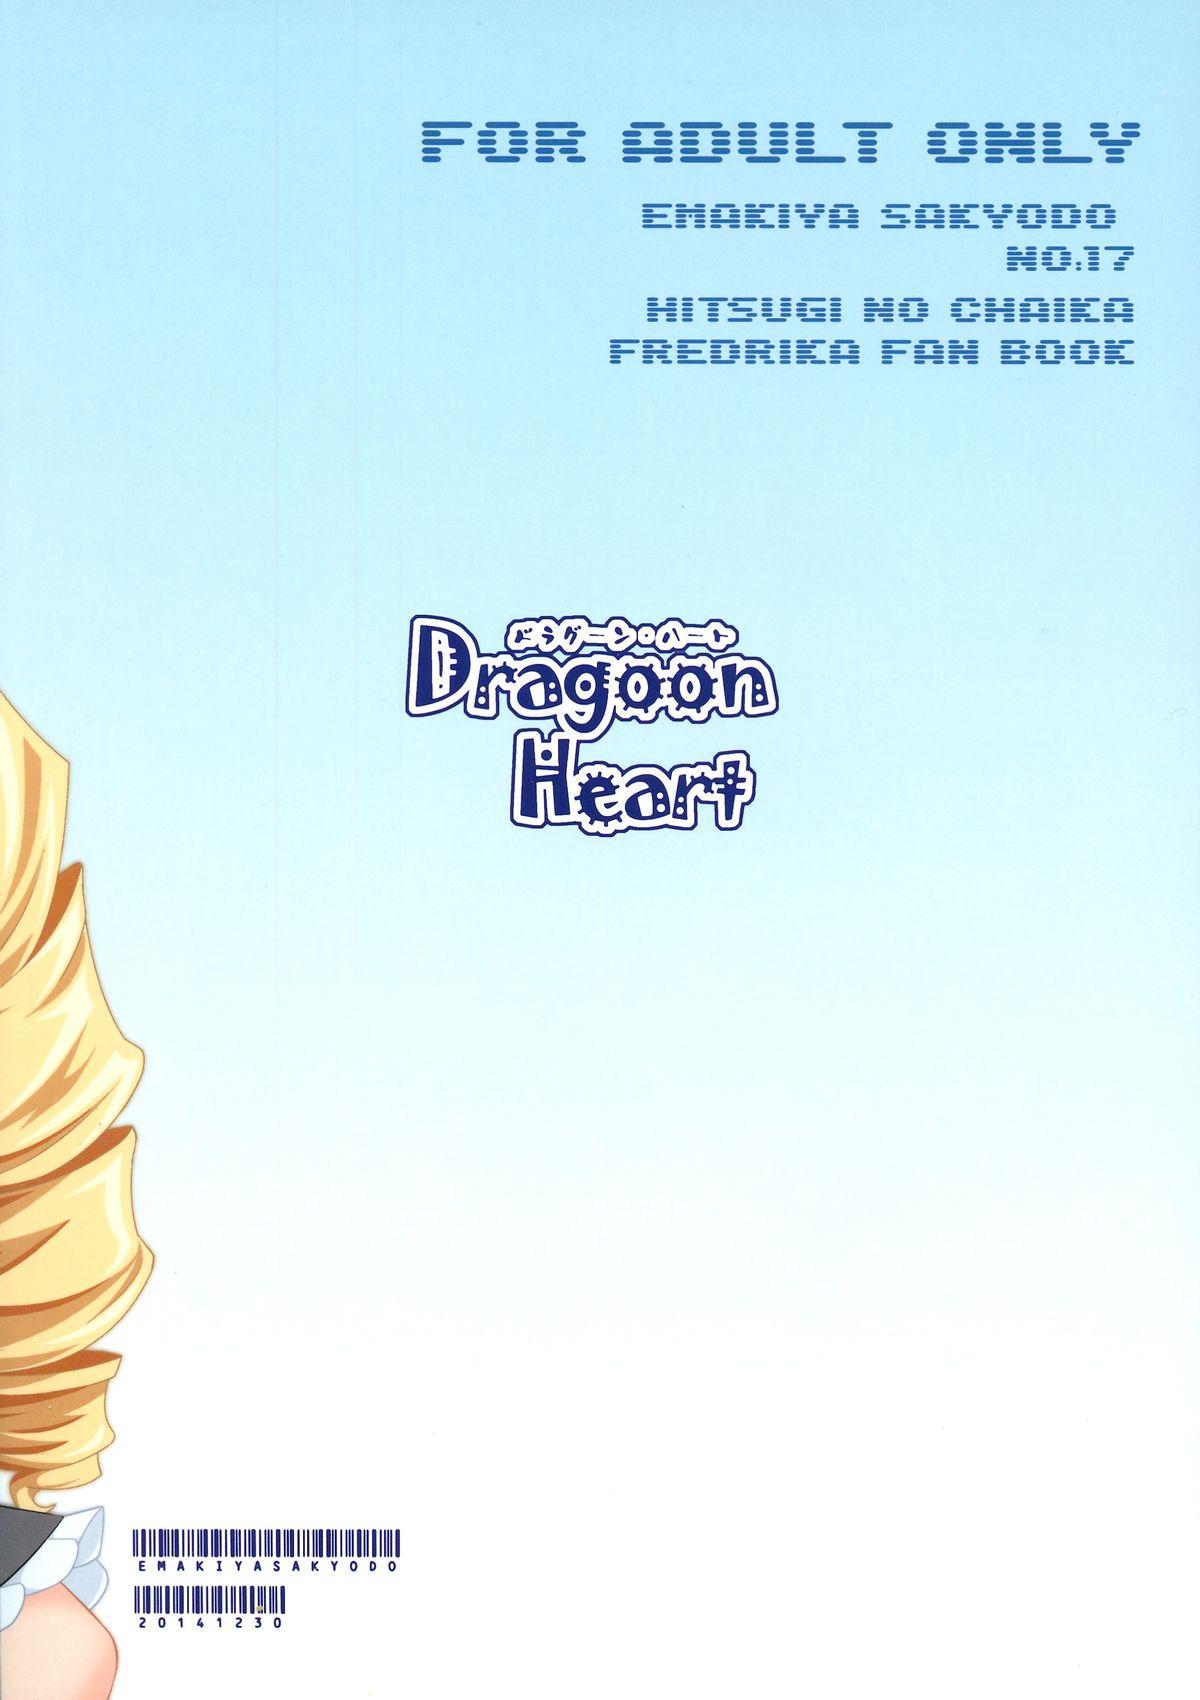 Neighbor Dragoon Heart - Hitsugi no chaika Gostoso - Page 2